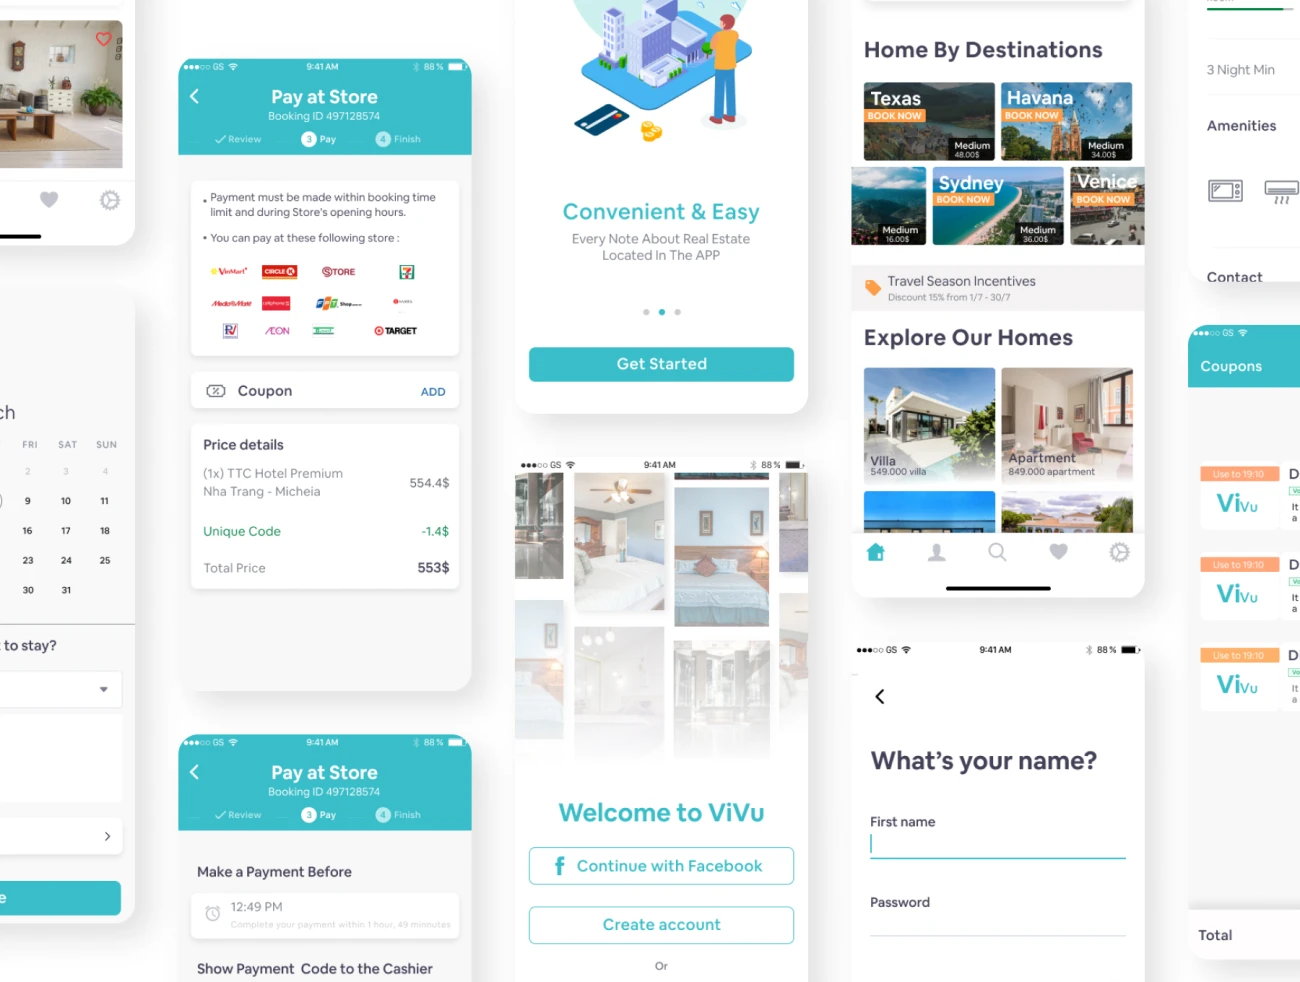 ViVu Hotel Booking App UI Kit 酒店预订app应用UI套件-UI/UX、ui套件、主页、介绍、付款、出行、列表、卡片式、地图、应用、引导页、支付、日历、注册、登录页、着陆页、网购、聊天、表单、详情、预订-到位啦UI